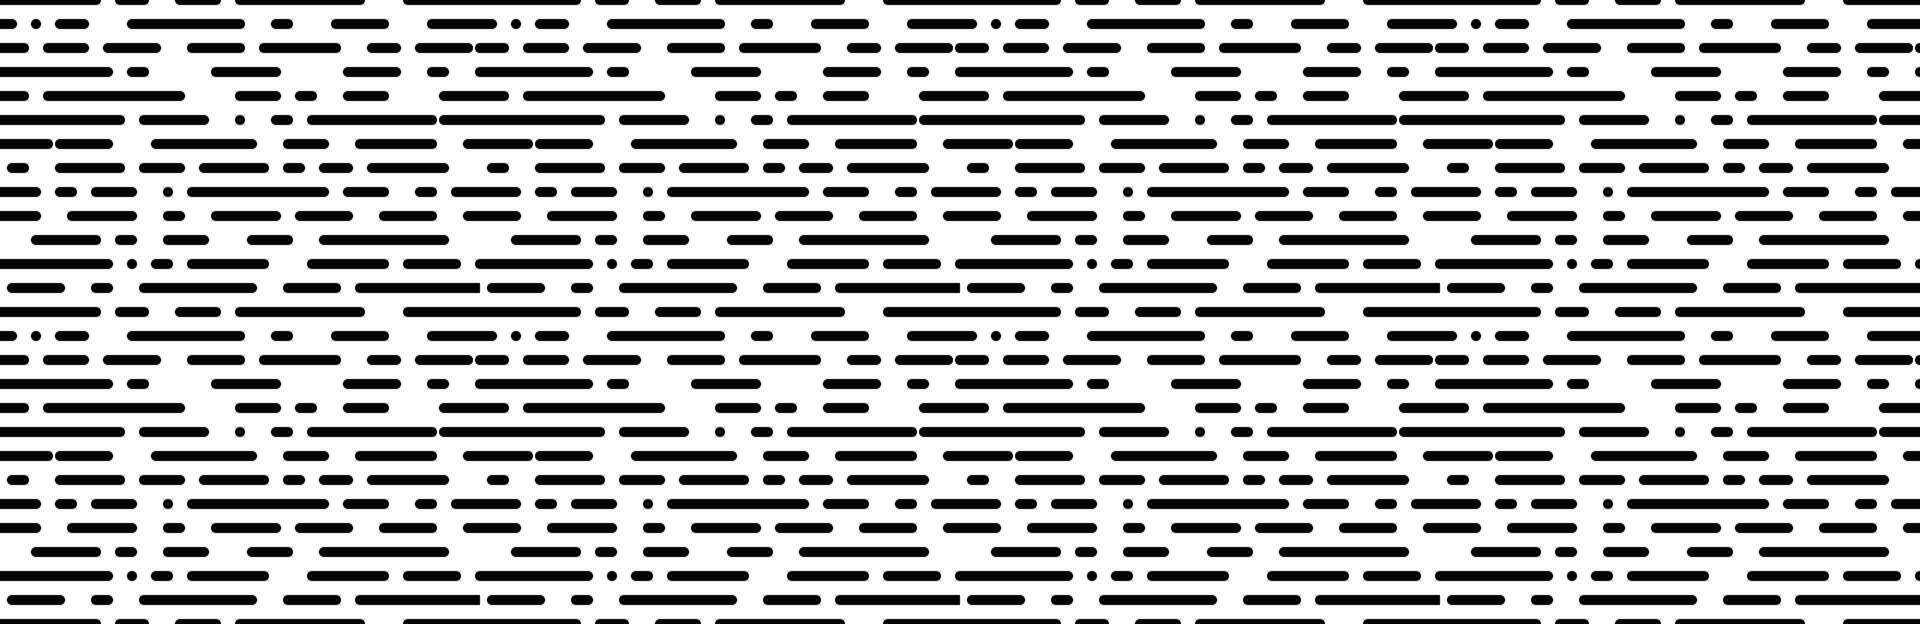 zwart wit willekeurig stippel lijn naadloos patroon vector